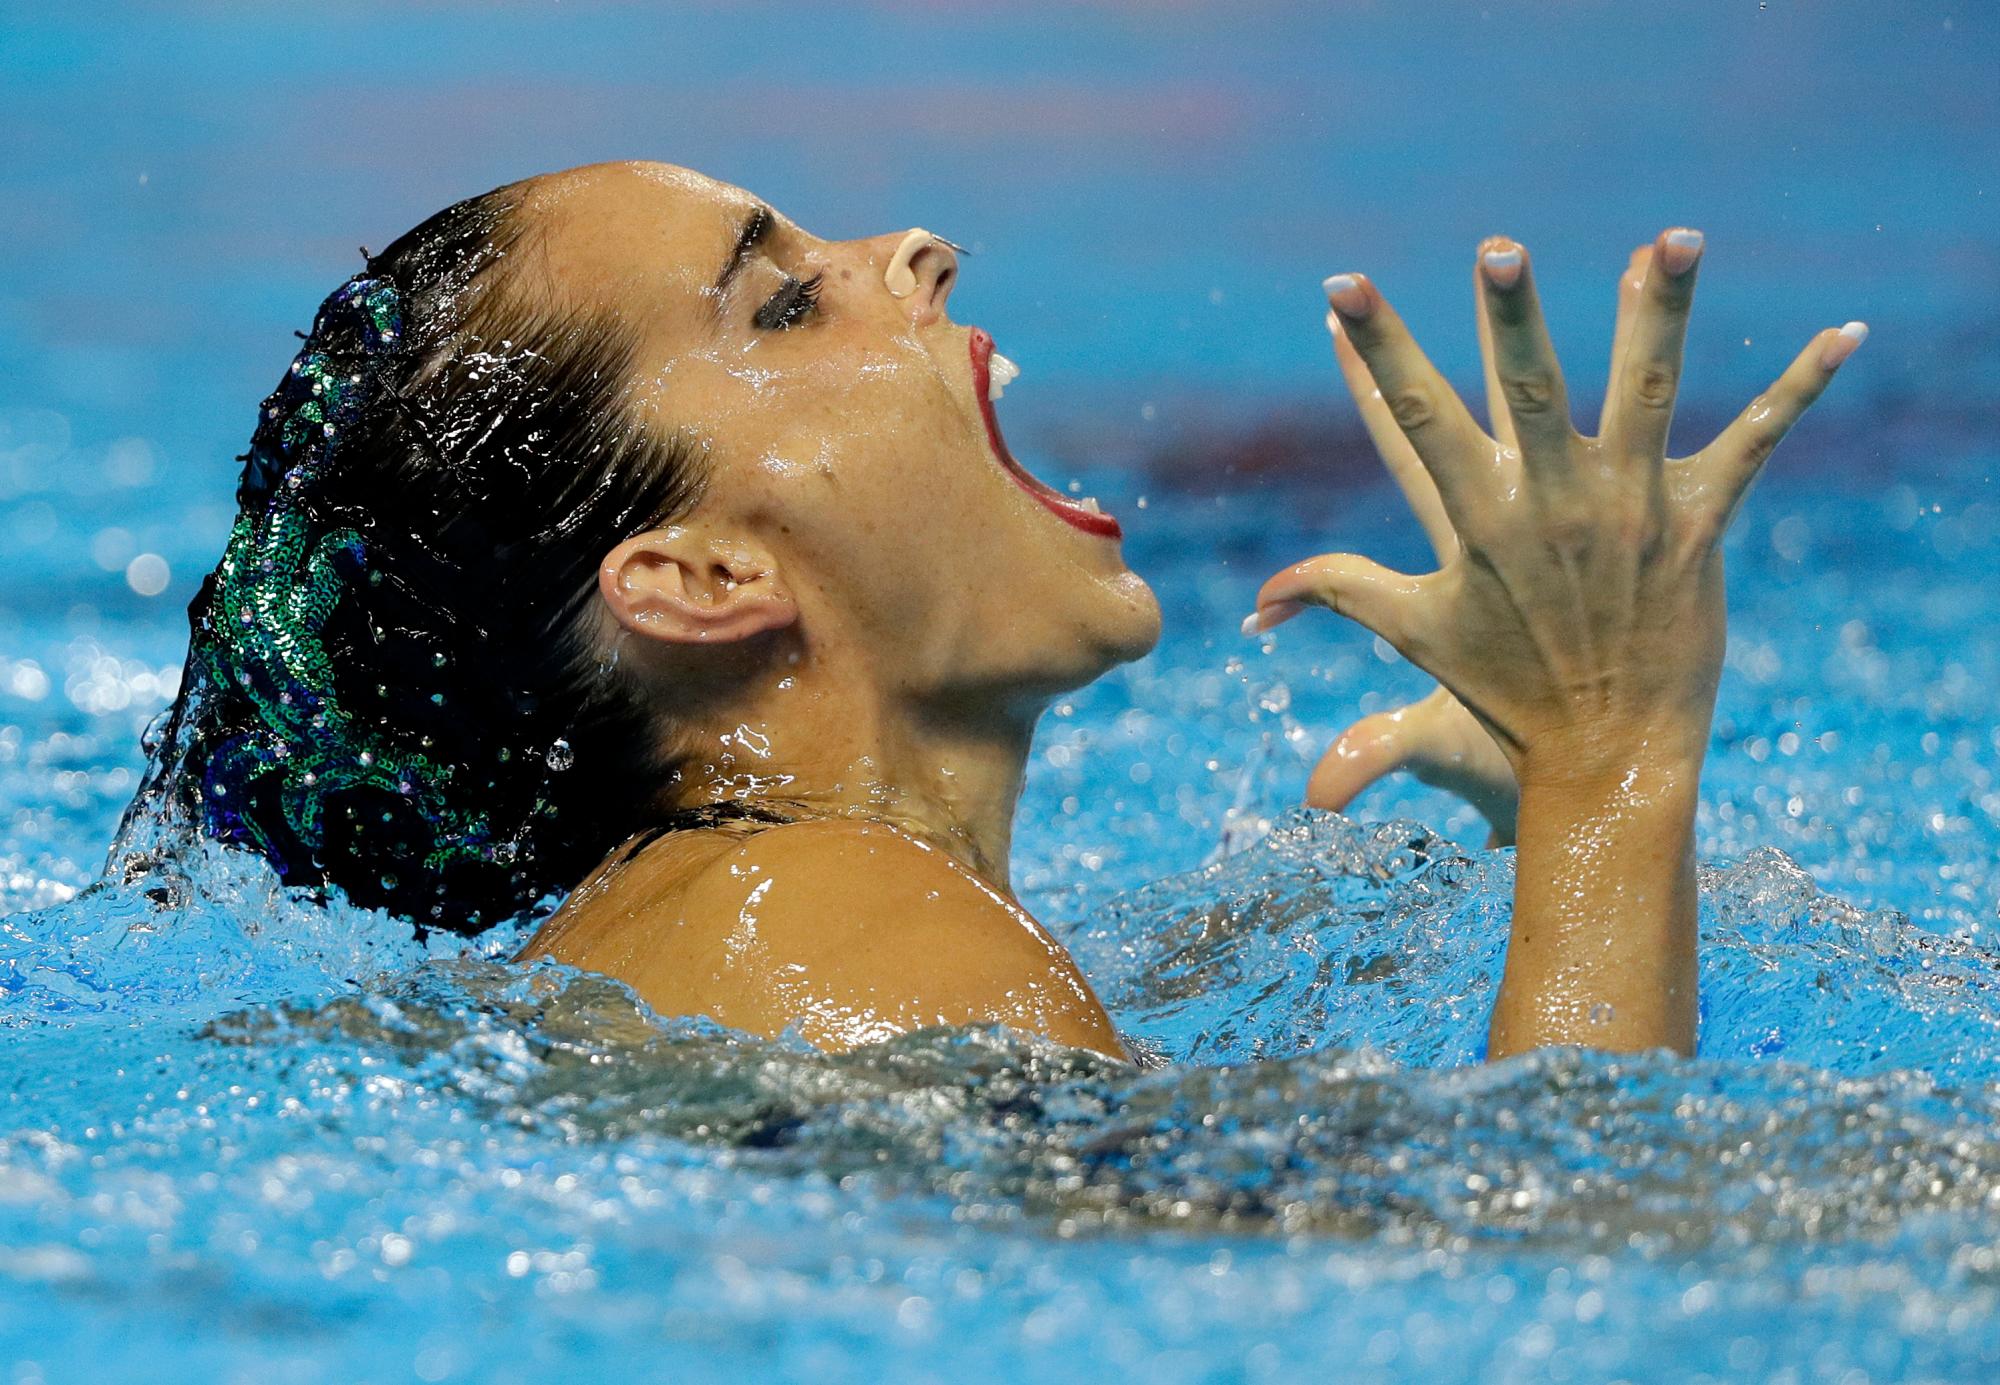 La española Ona Carbonell realiza su rutina en la previa artística de la natación en solitario en el Campeonato Mundial de Natación en Gwangju, Corea del Sur, el lunes 15 de julio de 2019. 